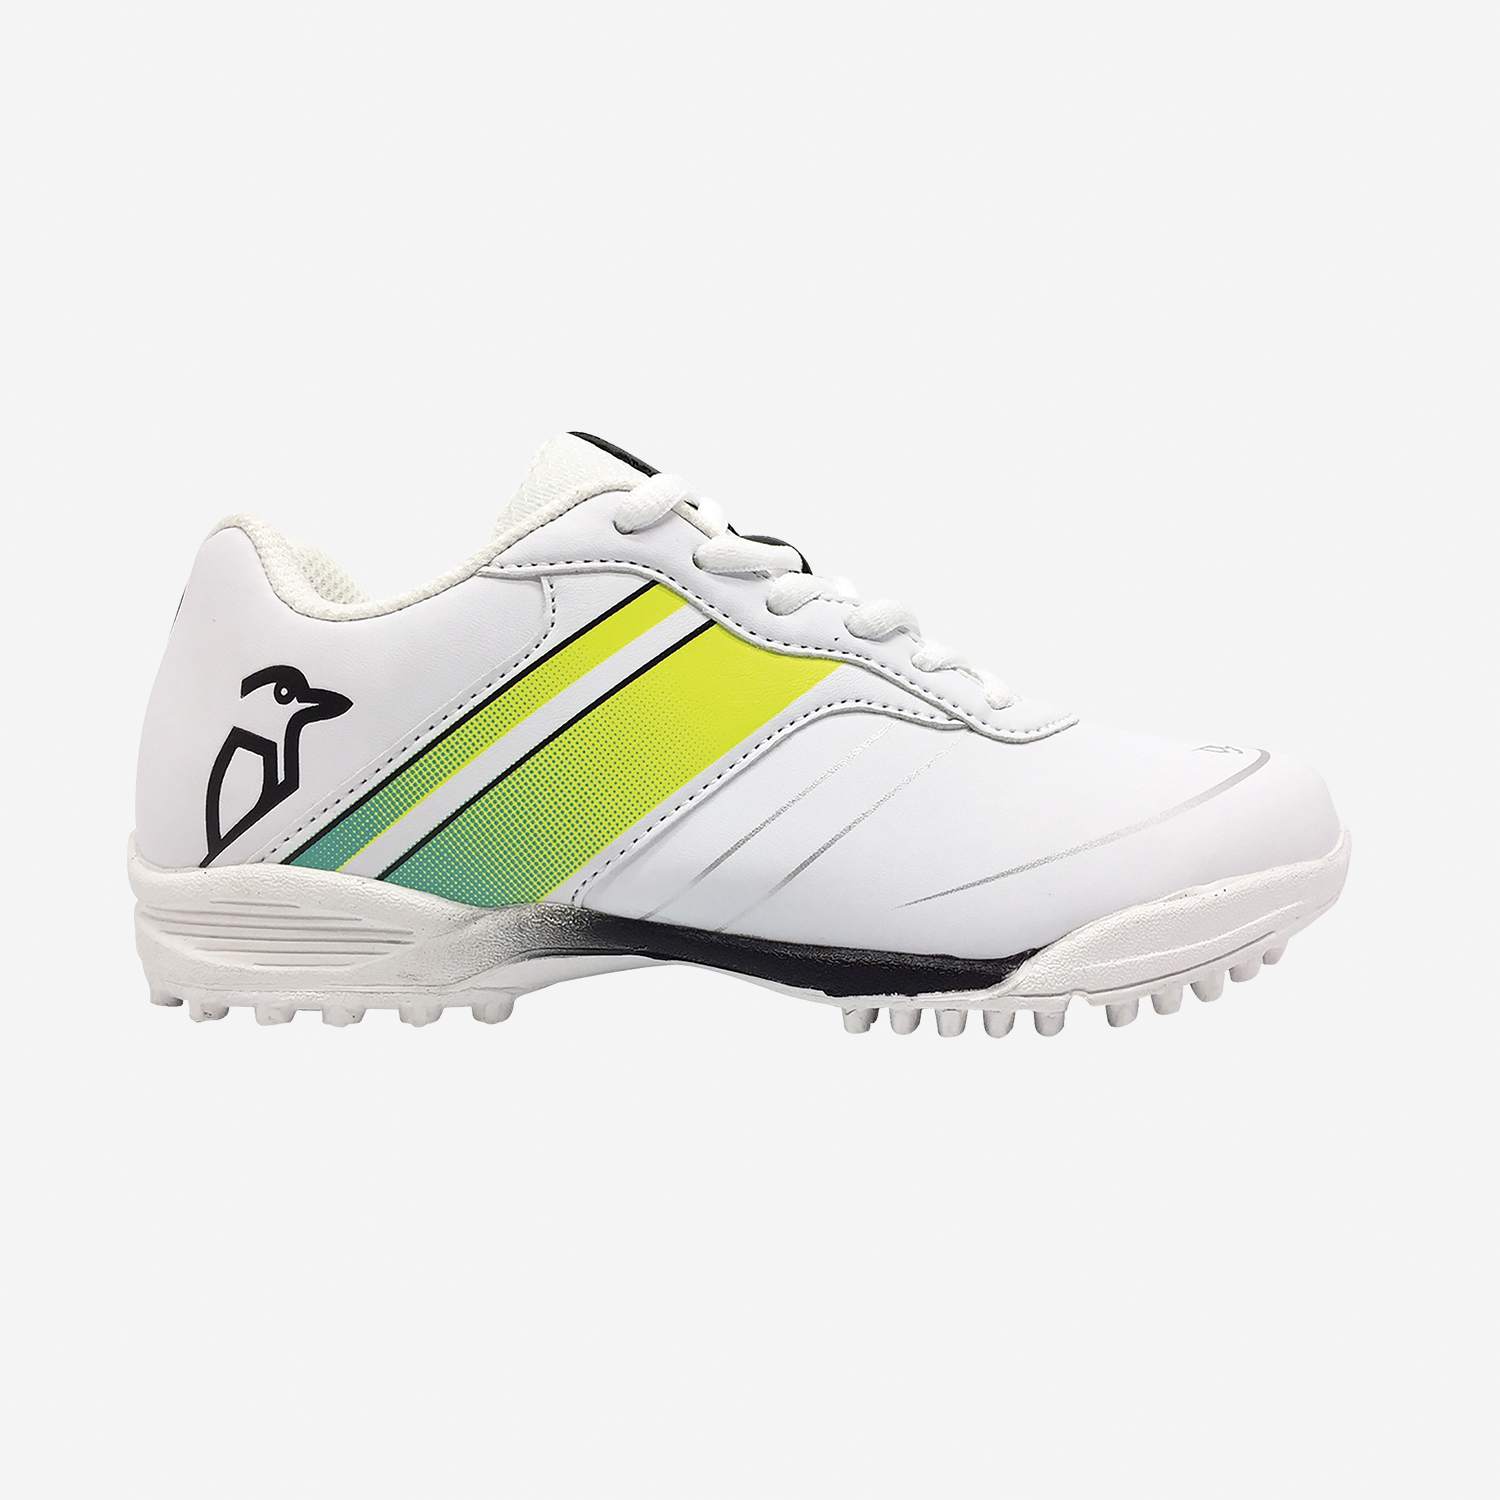 Kookaburra Footwear 4 Kookaburra Pro 5.0 Rubber Cricket Shoes